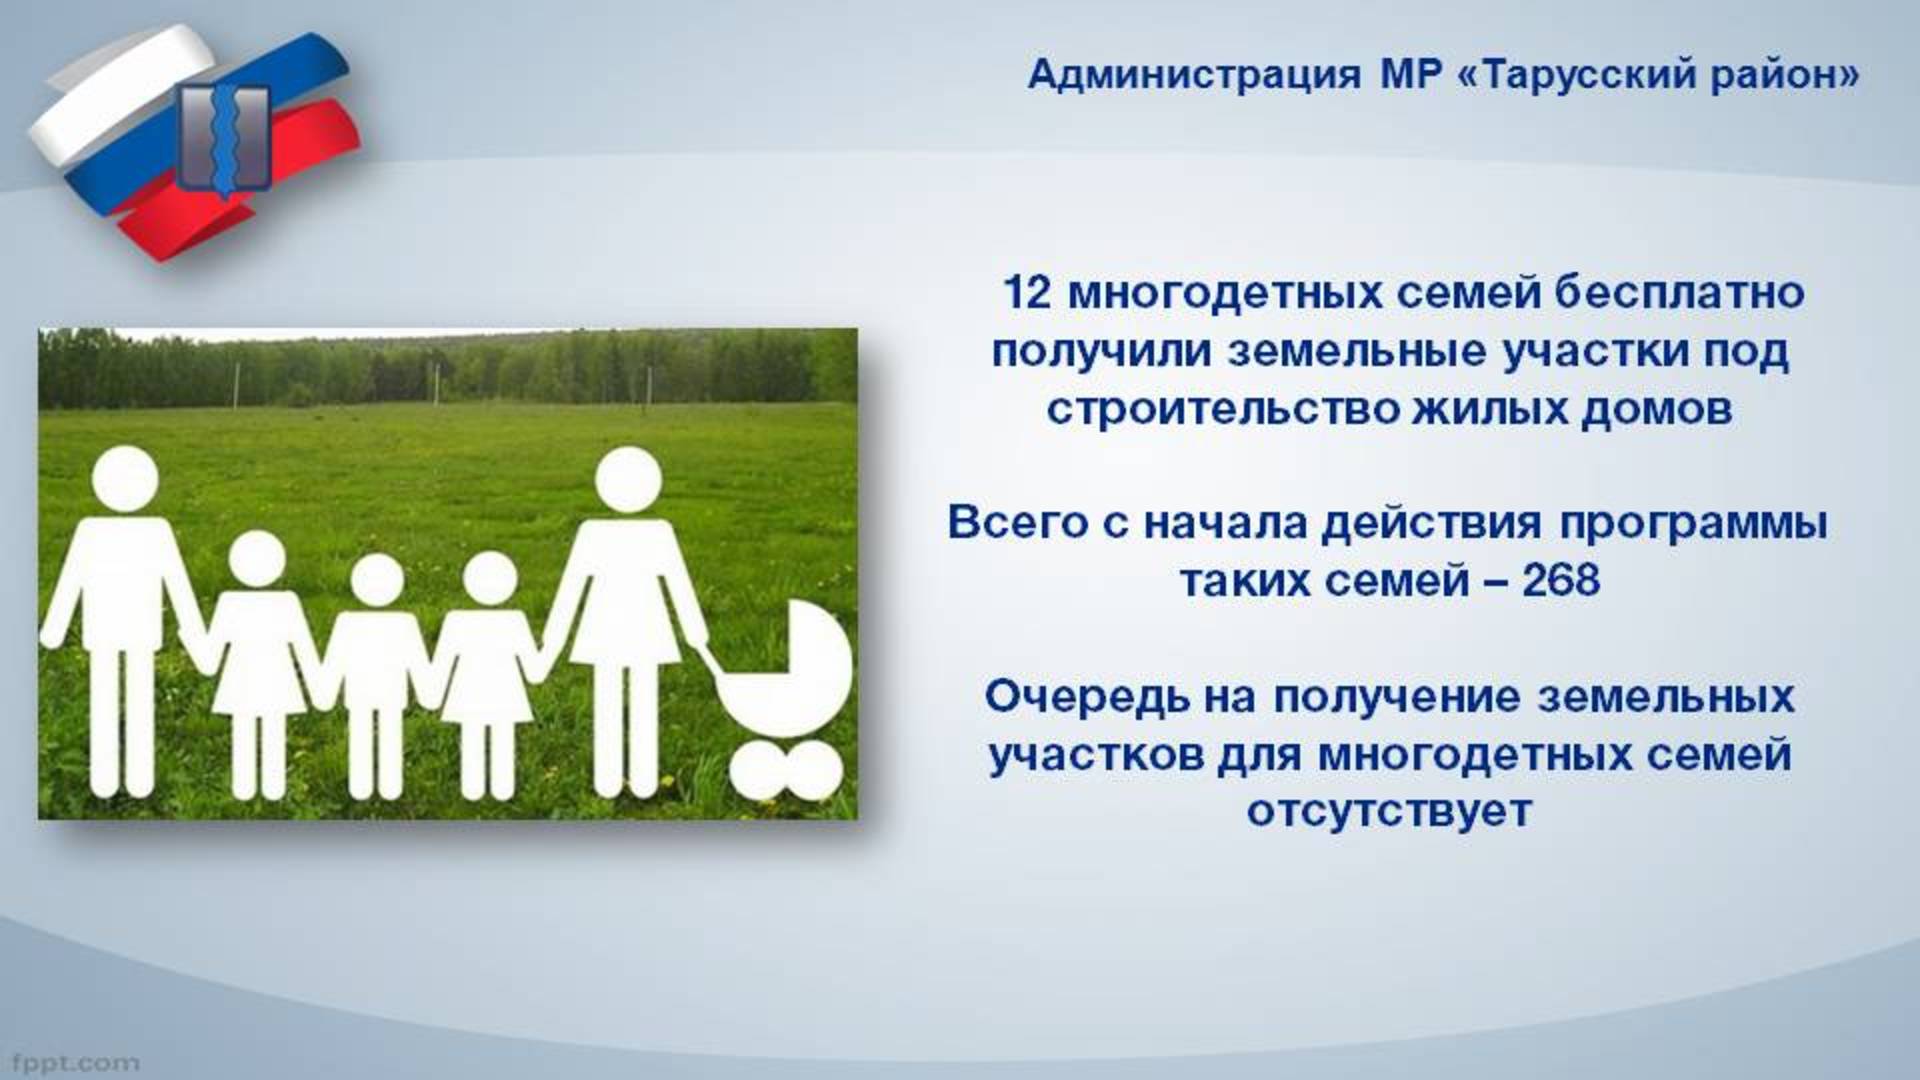 Россия является членом семьи. Многодетная семья для презентации. Условия для государственной поддержки многодетных семей. Земельные участки многодетным семьям. Программа для многодетных семей.